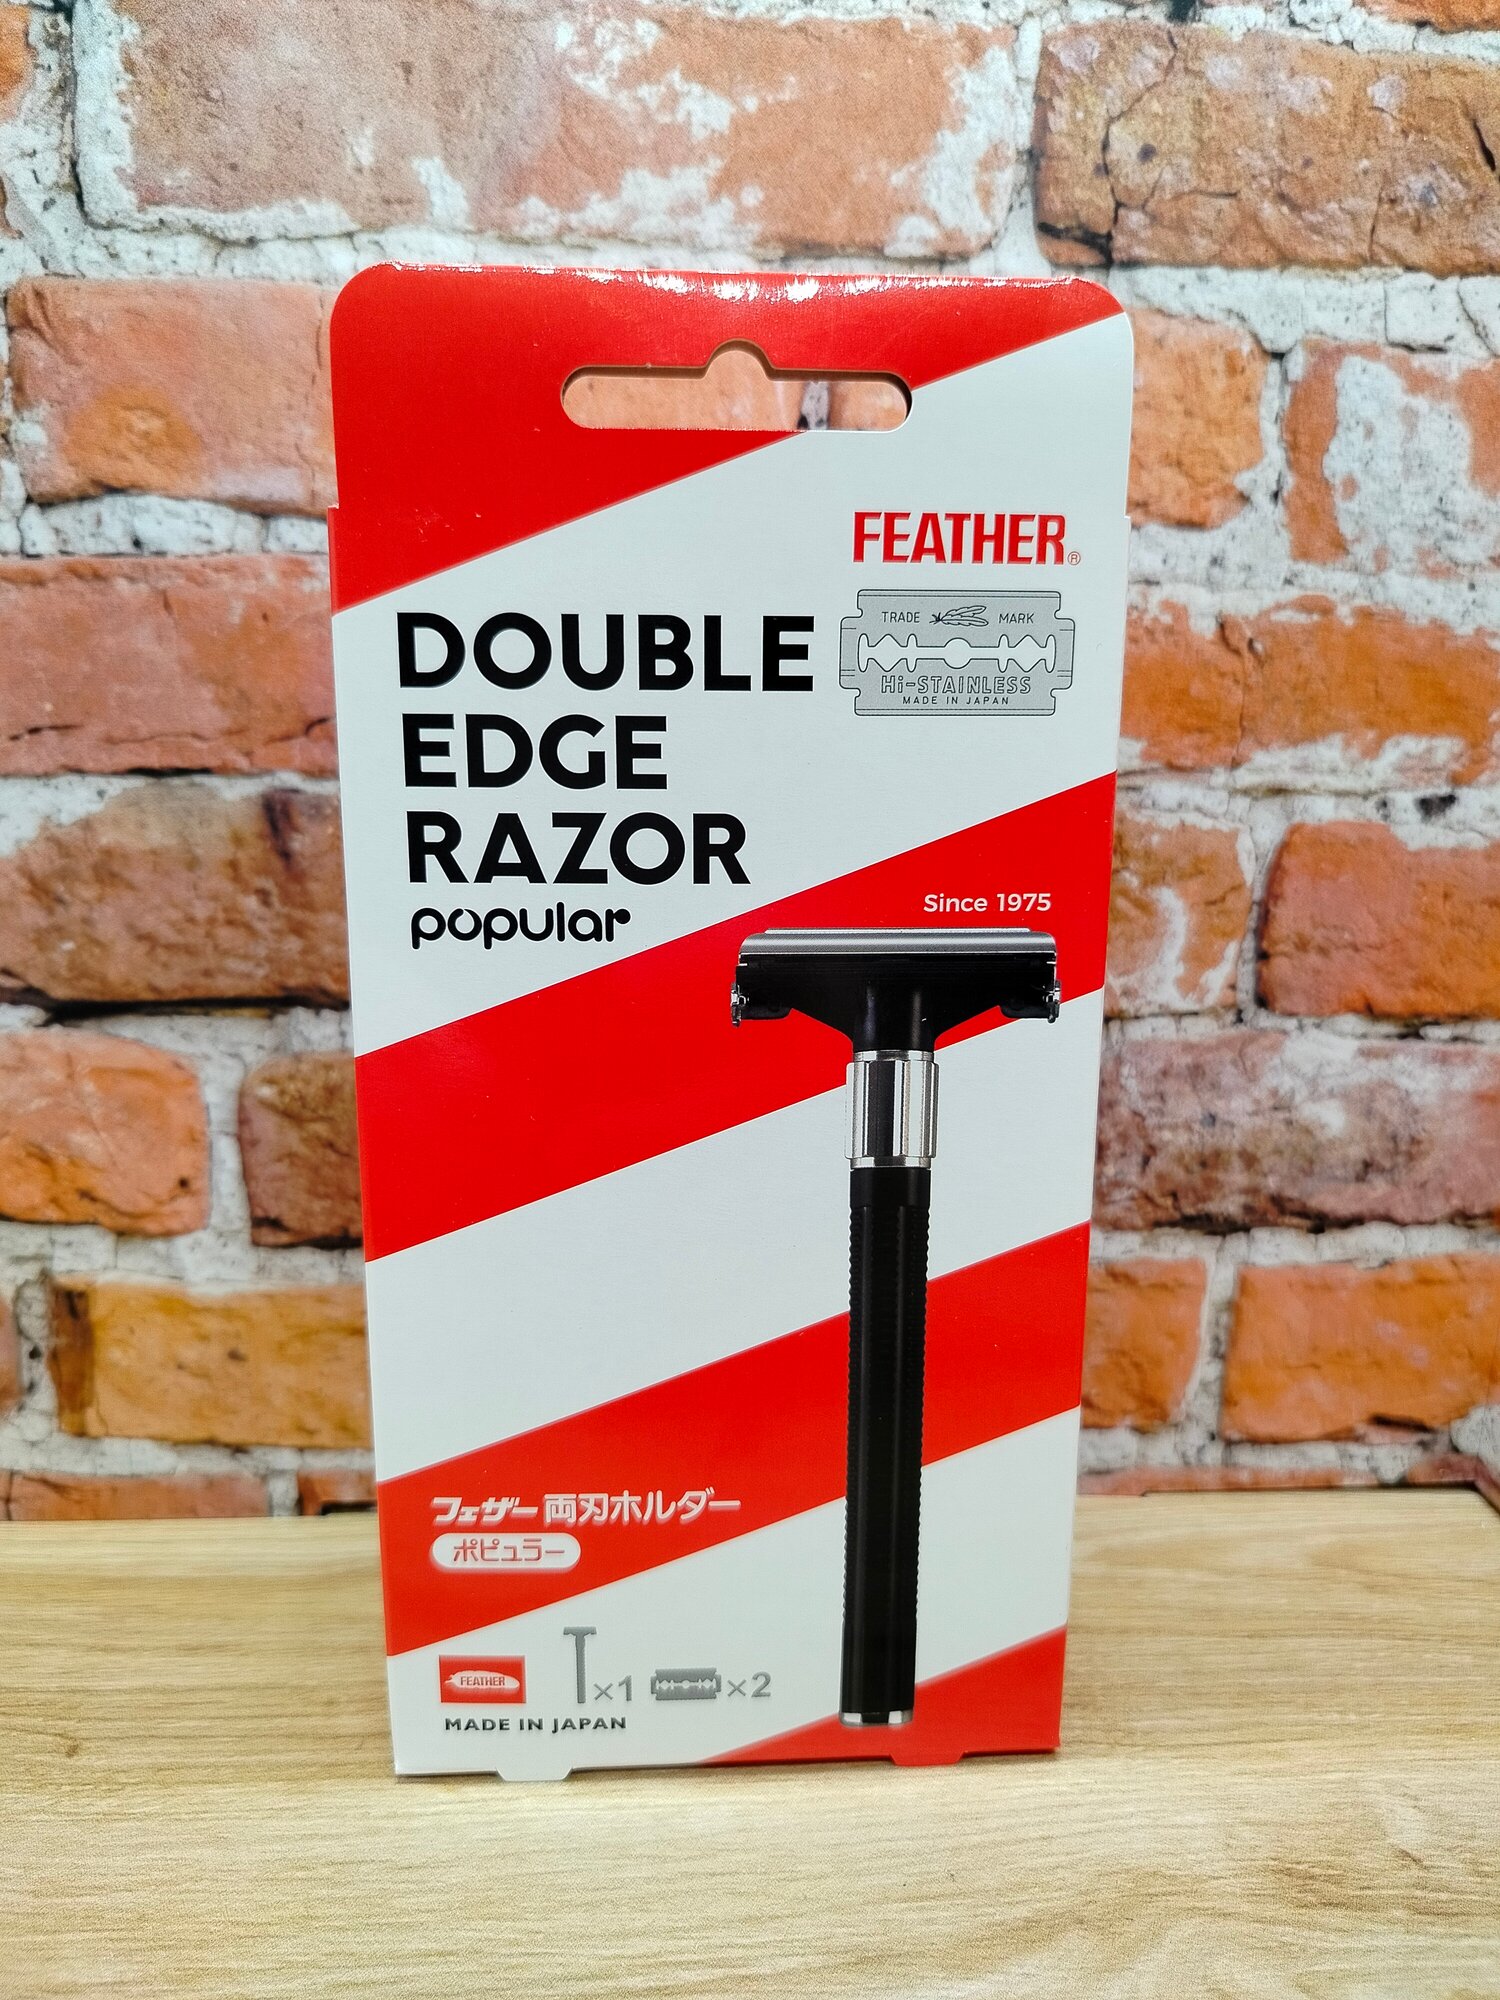 Feather Double Edge Razor Popular Классический Т-образный мужской бритвенный станок с двухсторонним лезвием